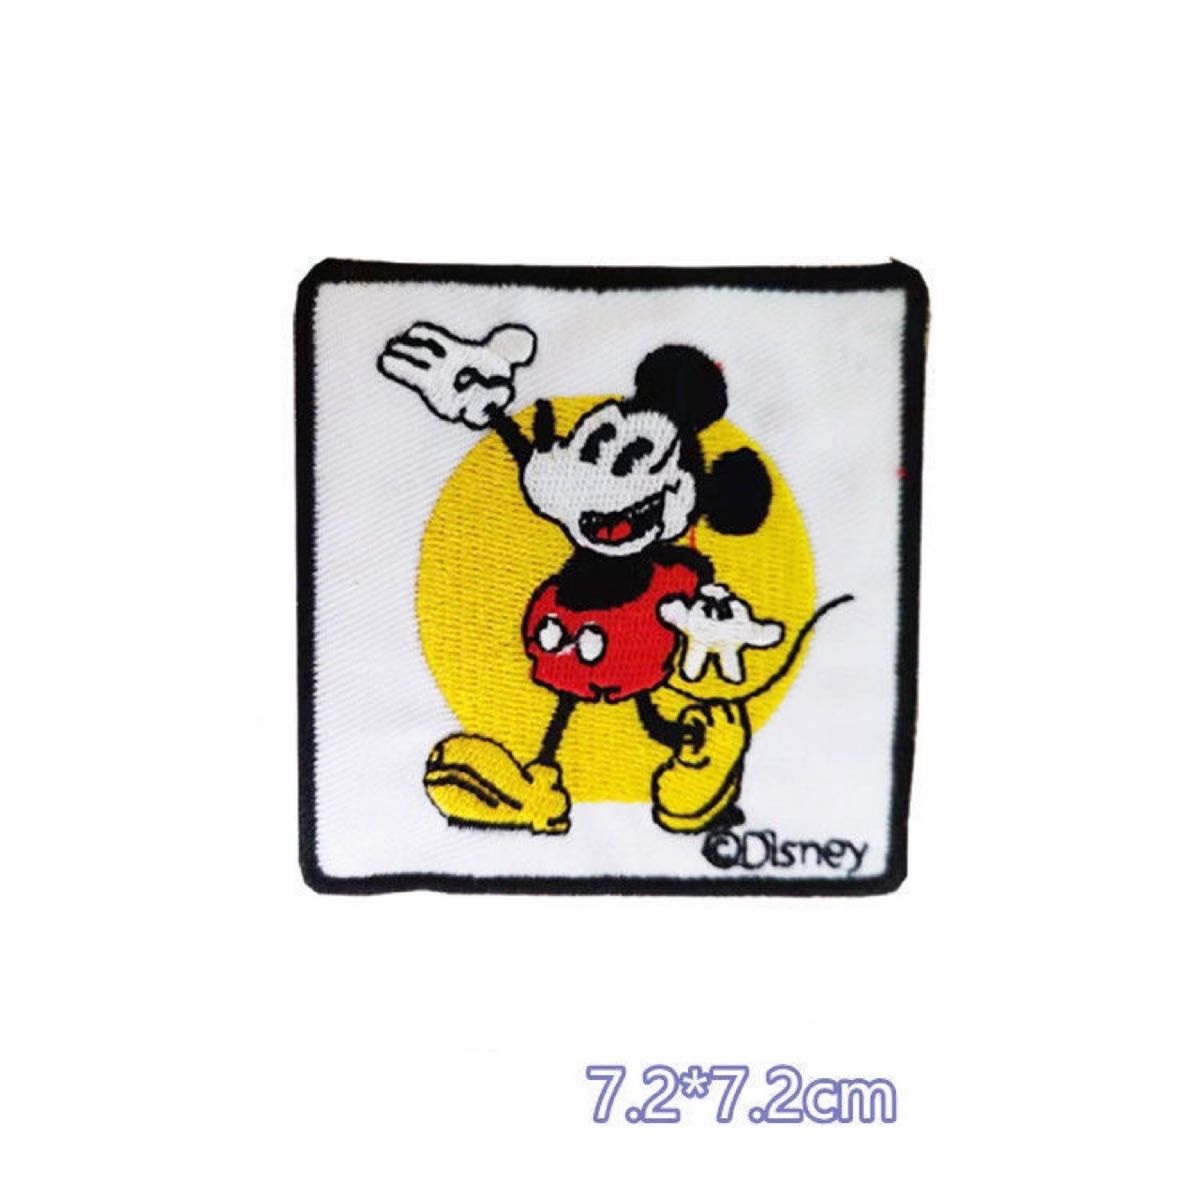  刺繍アイロンワッペン 7枚セットミッキーマウス  ディズニー フレーク